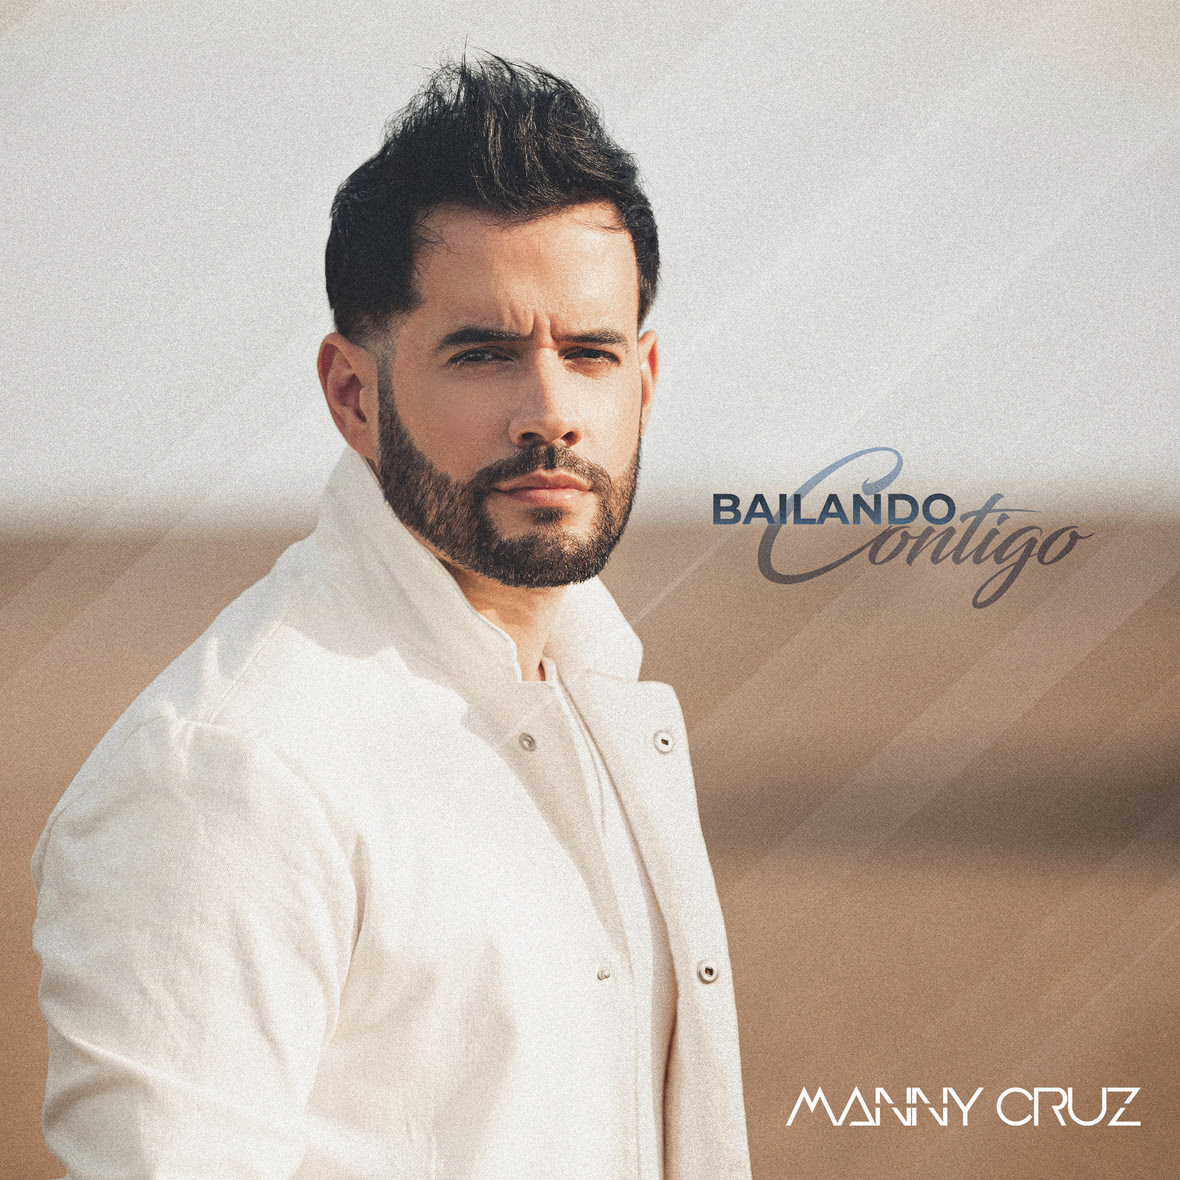 BAILANDO CONTIGO - Manny Cruz cover art 